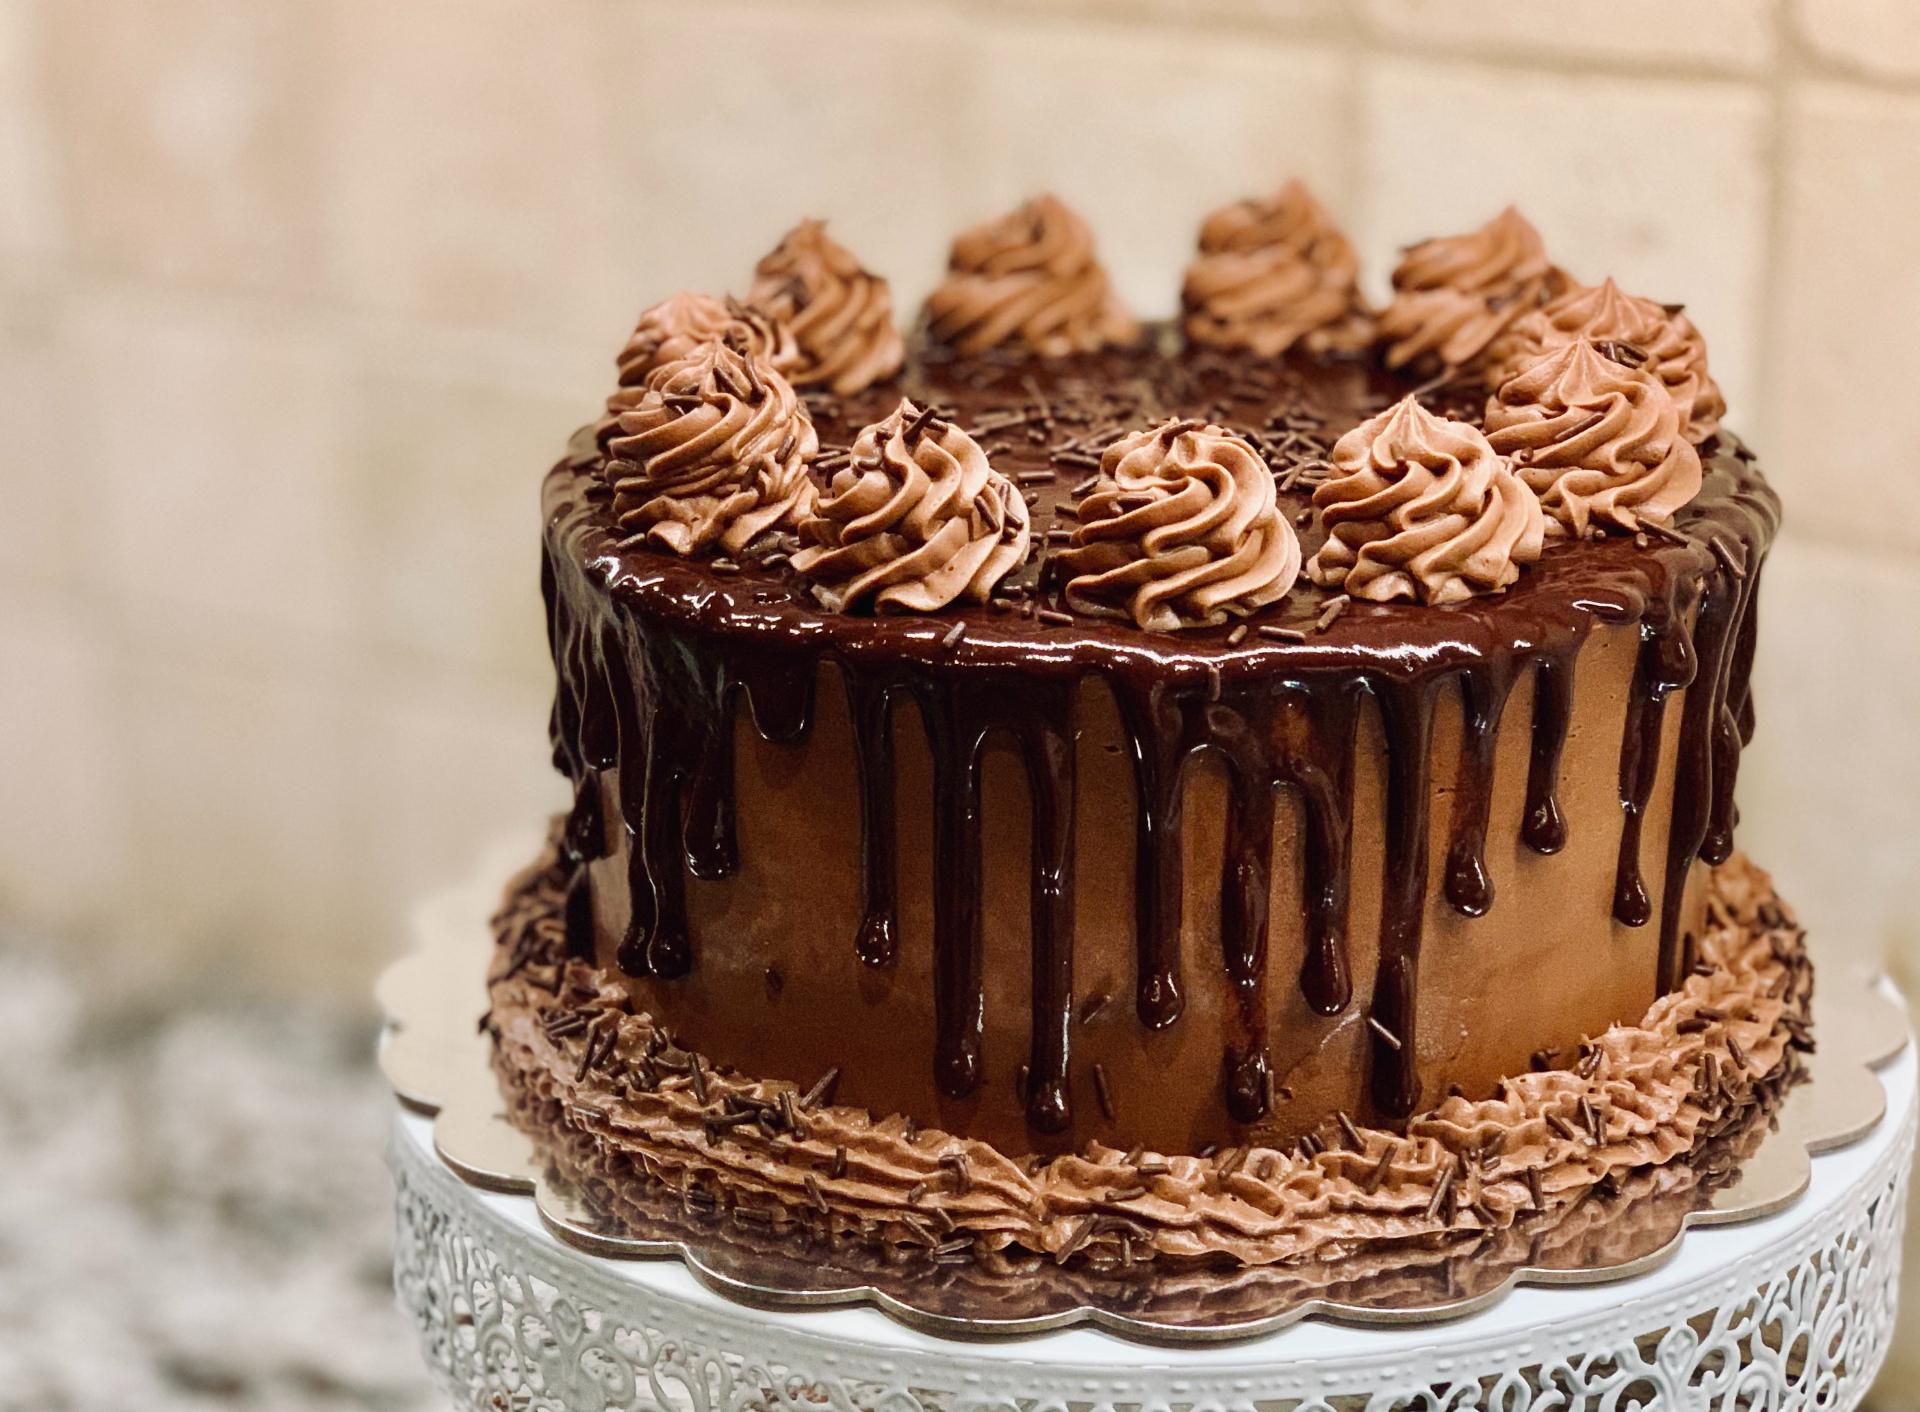 Νόστιμο κέικ σοκολάτας. Τα κέικ είναι οι βασιλιάδες των γλυκών γιατί είναι τα πιο διάσημα. Αν δεν πουλήσετε αυτό το γλυκό στο καφέ σας χάνετε χρήματα